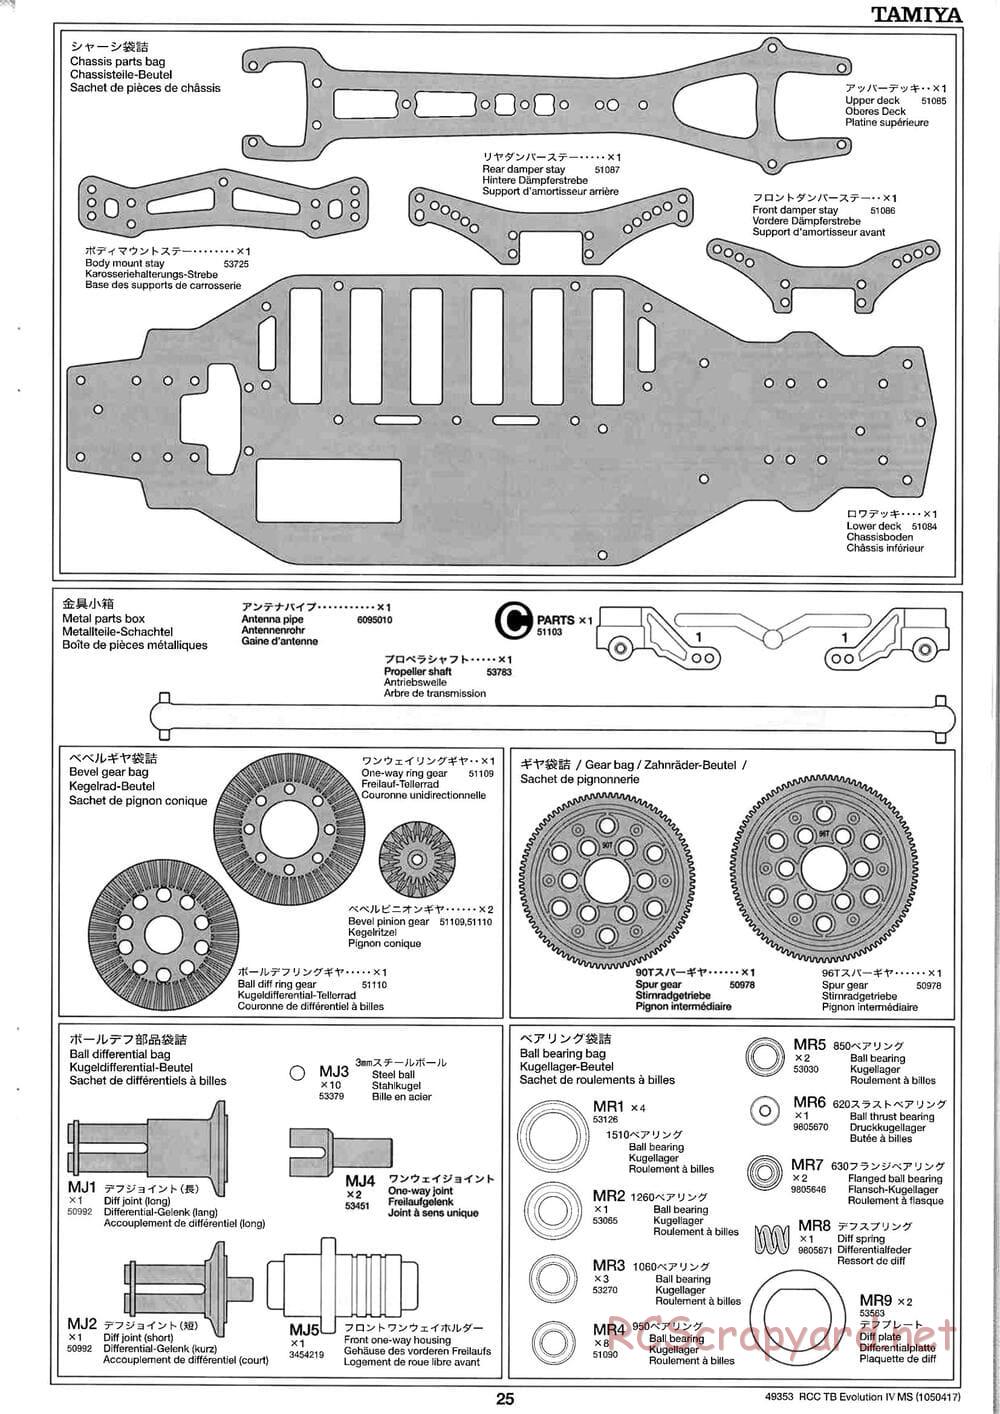 Tamiya - TB Evolution IV MS Chassis - Manual - Page 25